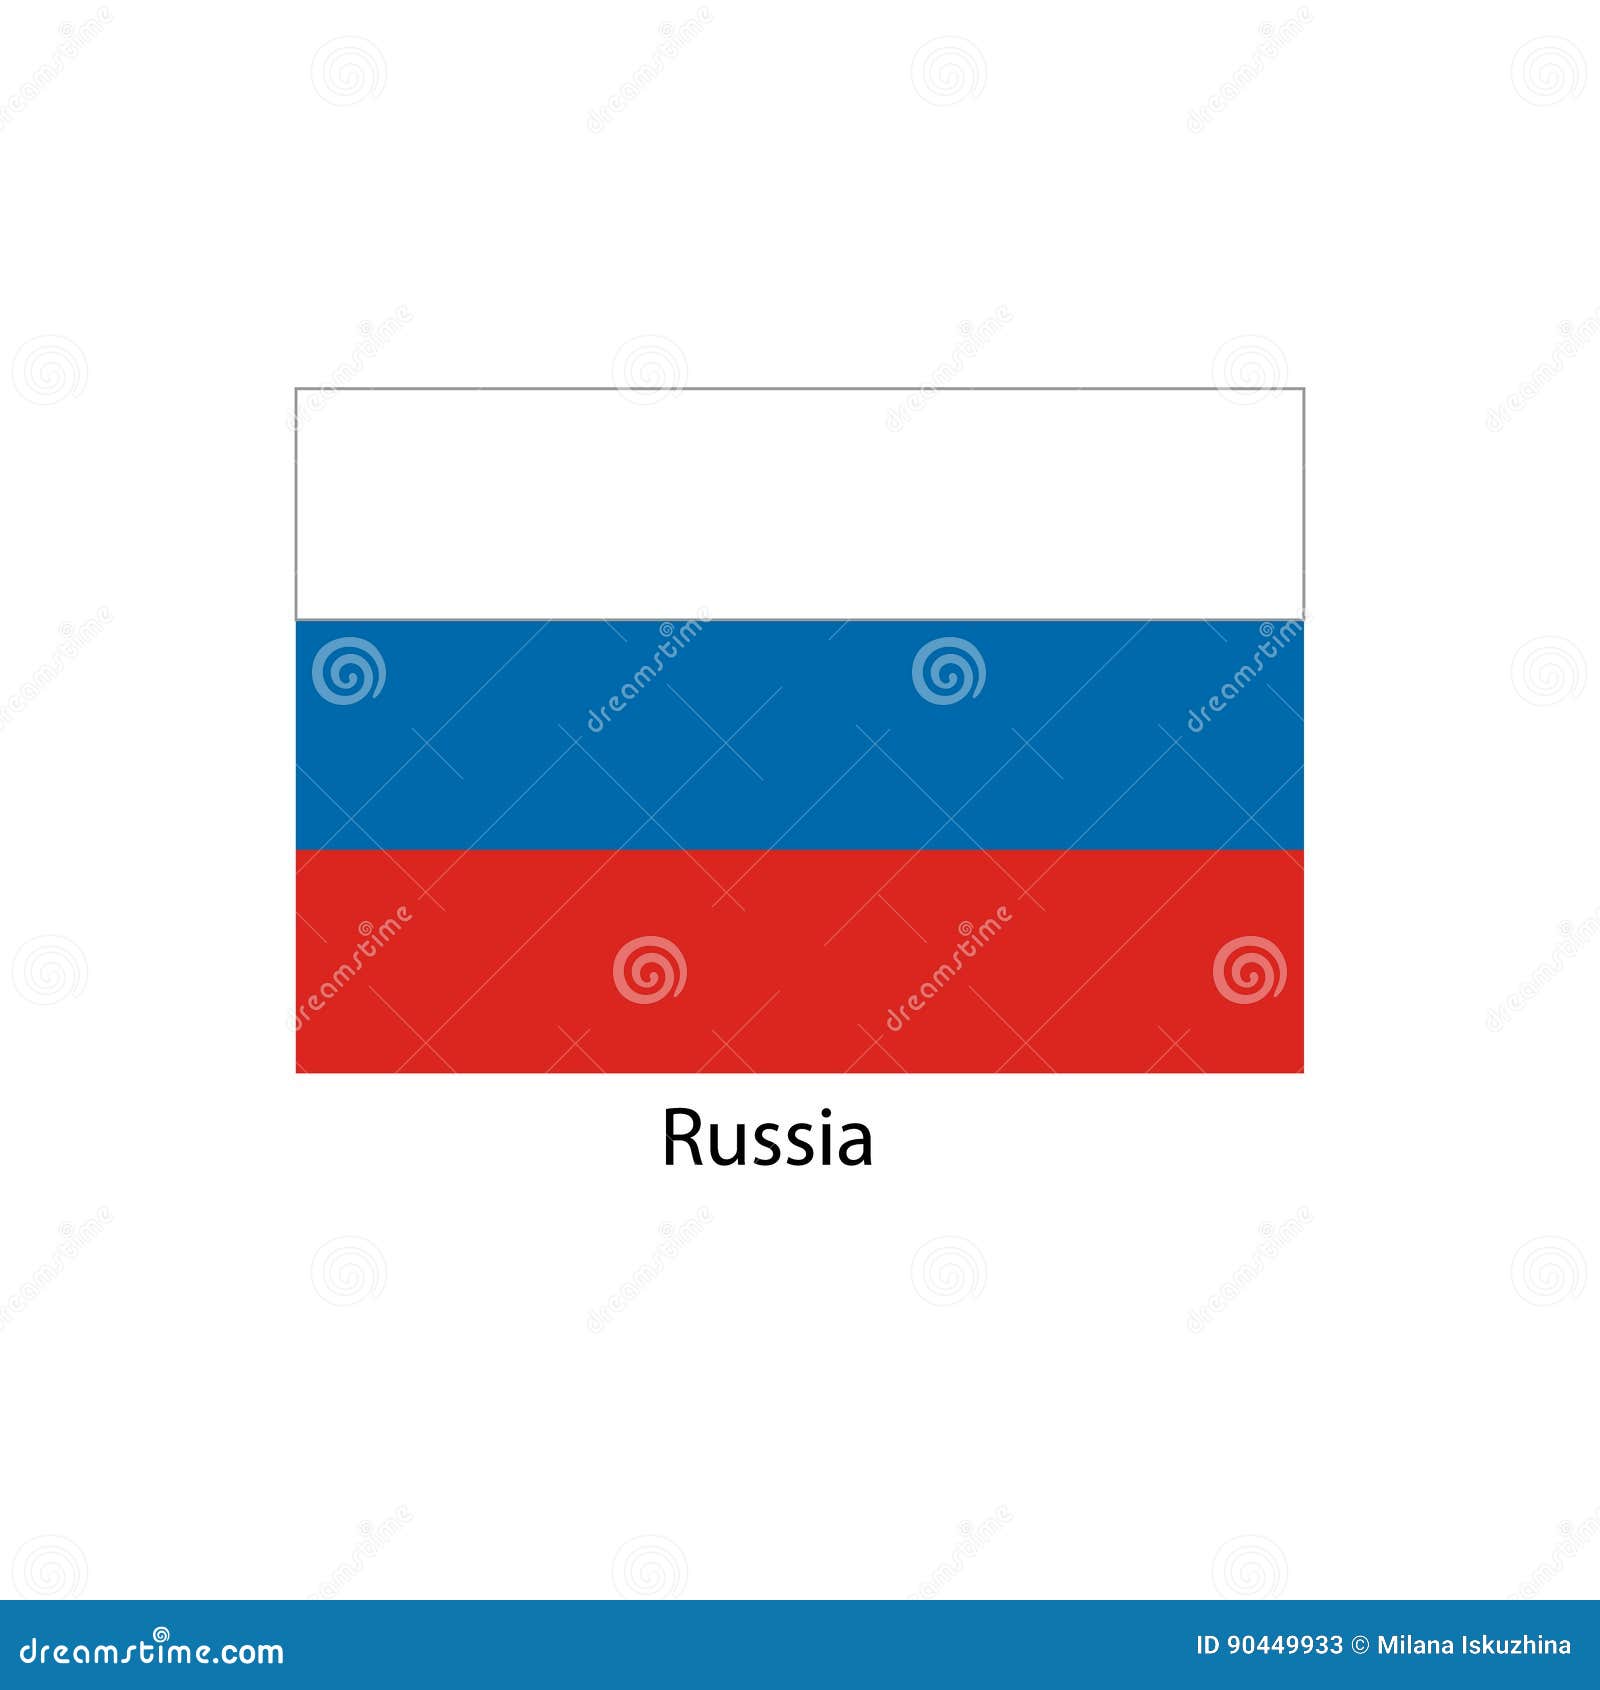 La Bandiera Della Russia Colori Ufficiali E Proporziona Correttamente Bandiera Nazionale Della Russia Illustrazione Vettoriale Illustrazione Di Arte Bandiera 90449933